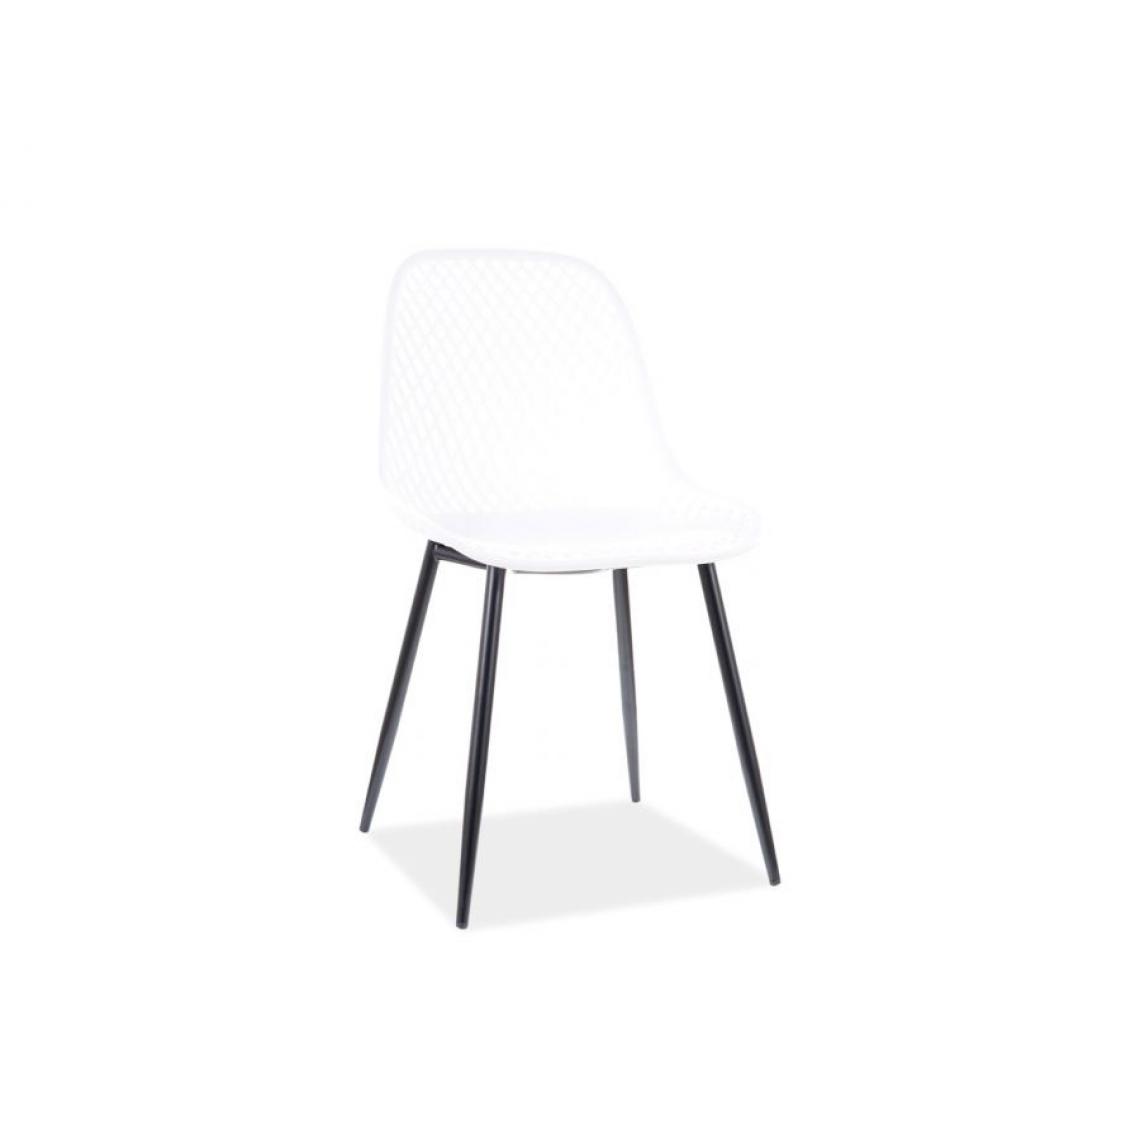 Hucoco - CORRIE - Chaise moderne en PP - Style scandinave - Chaise salle à manger salon balcon - Pieds en métal - Blanc - Chaises